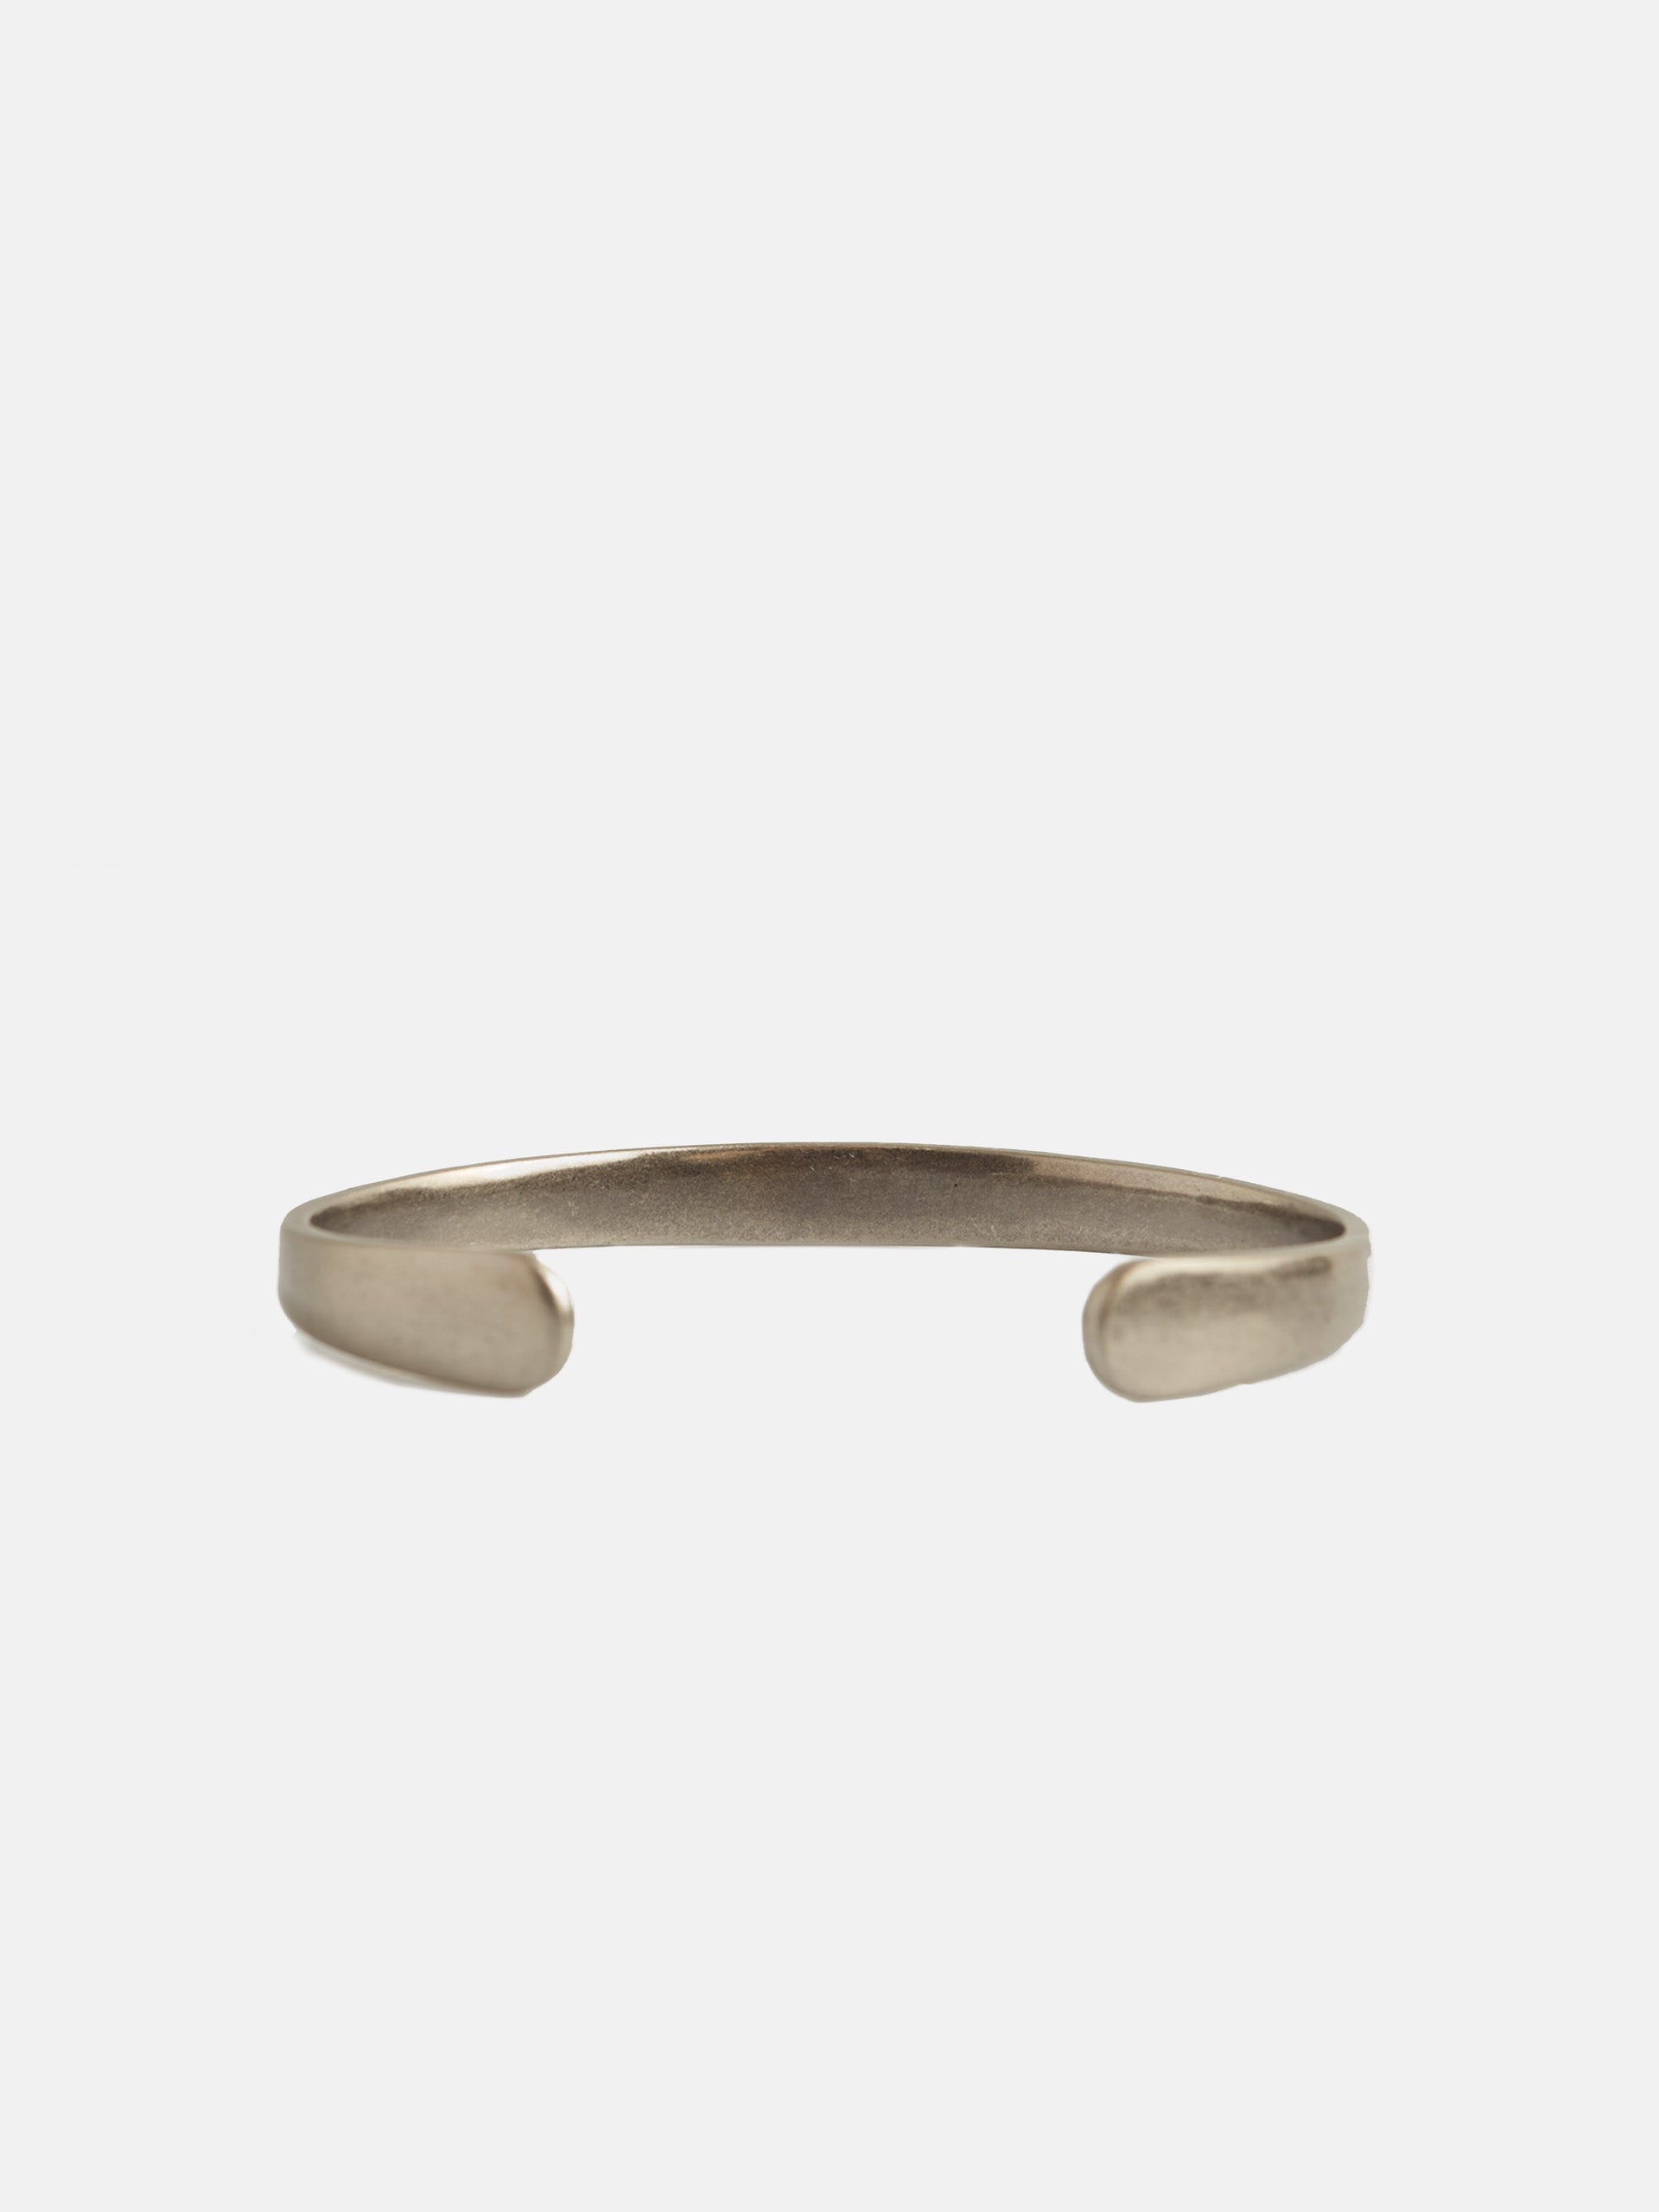 Metal silbon bracelet